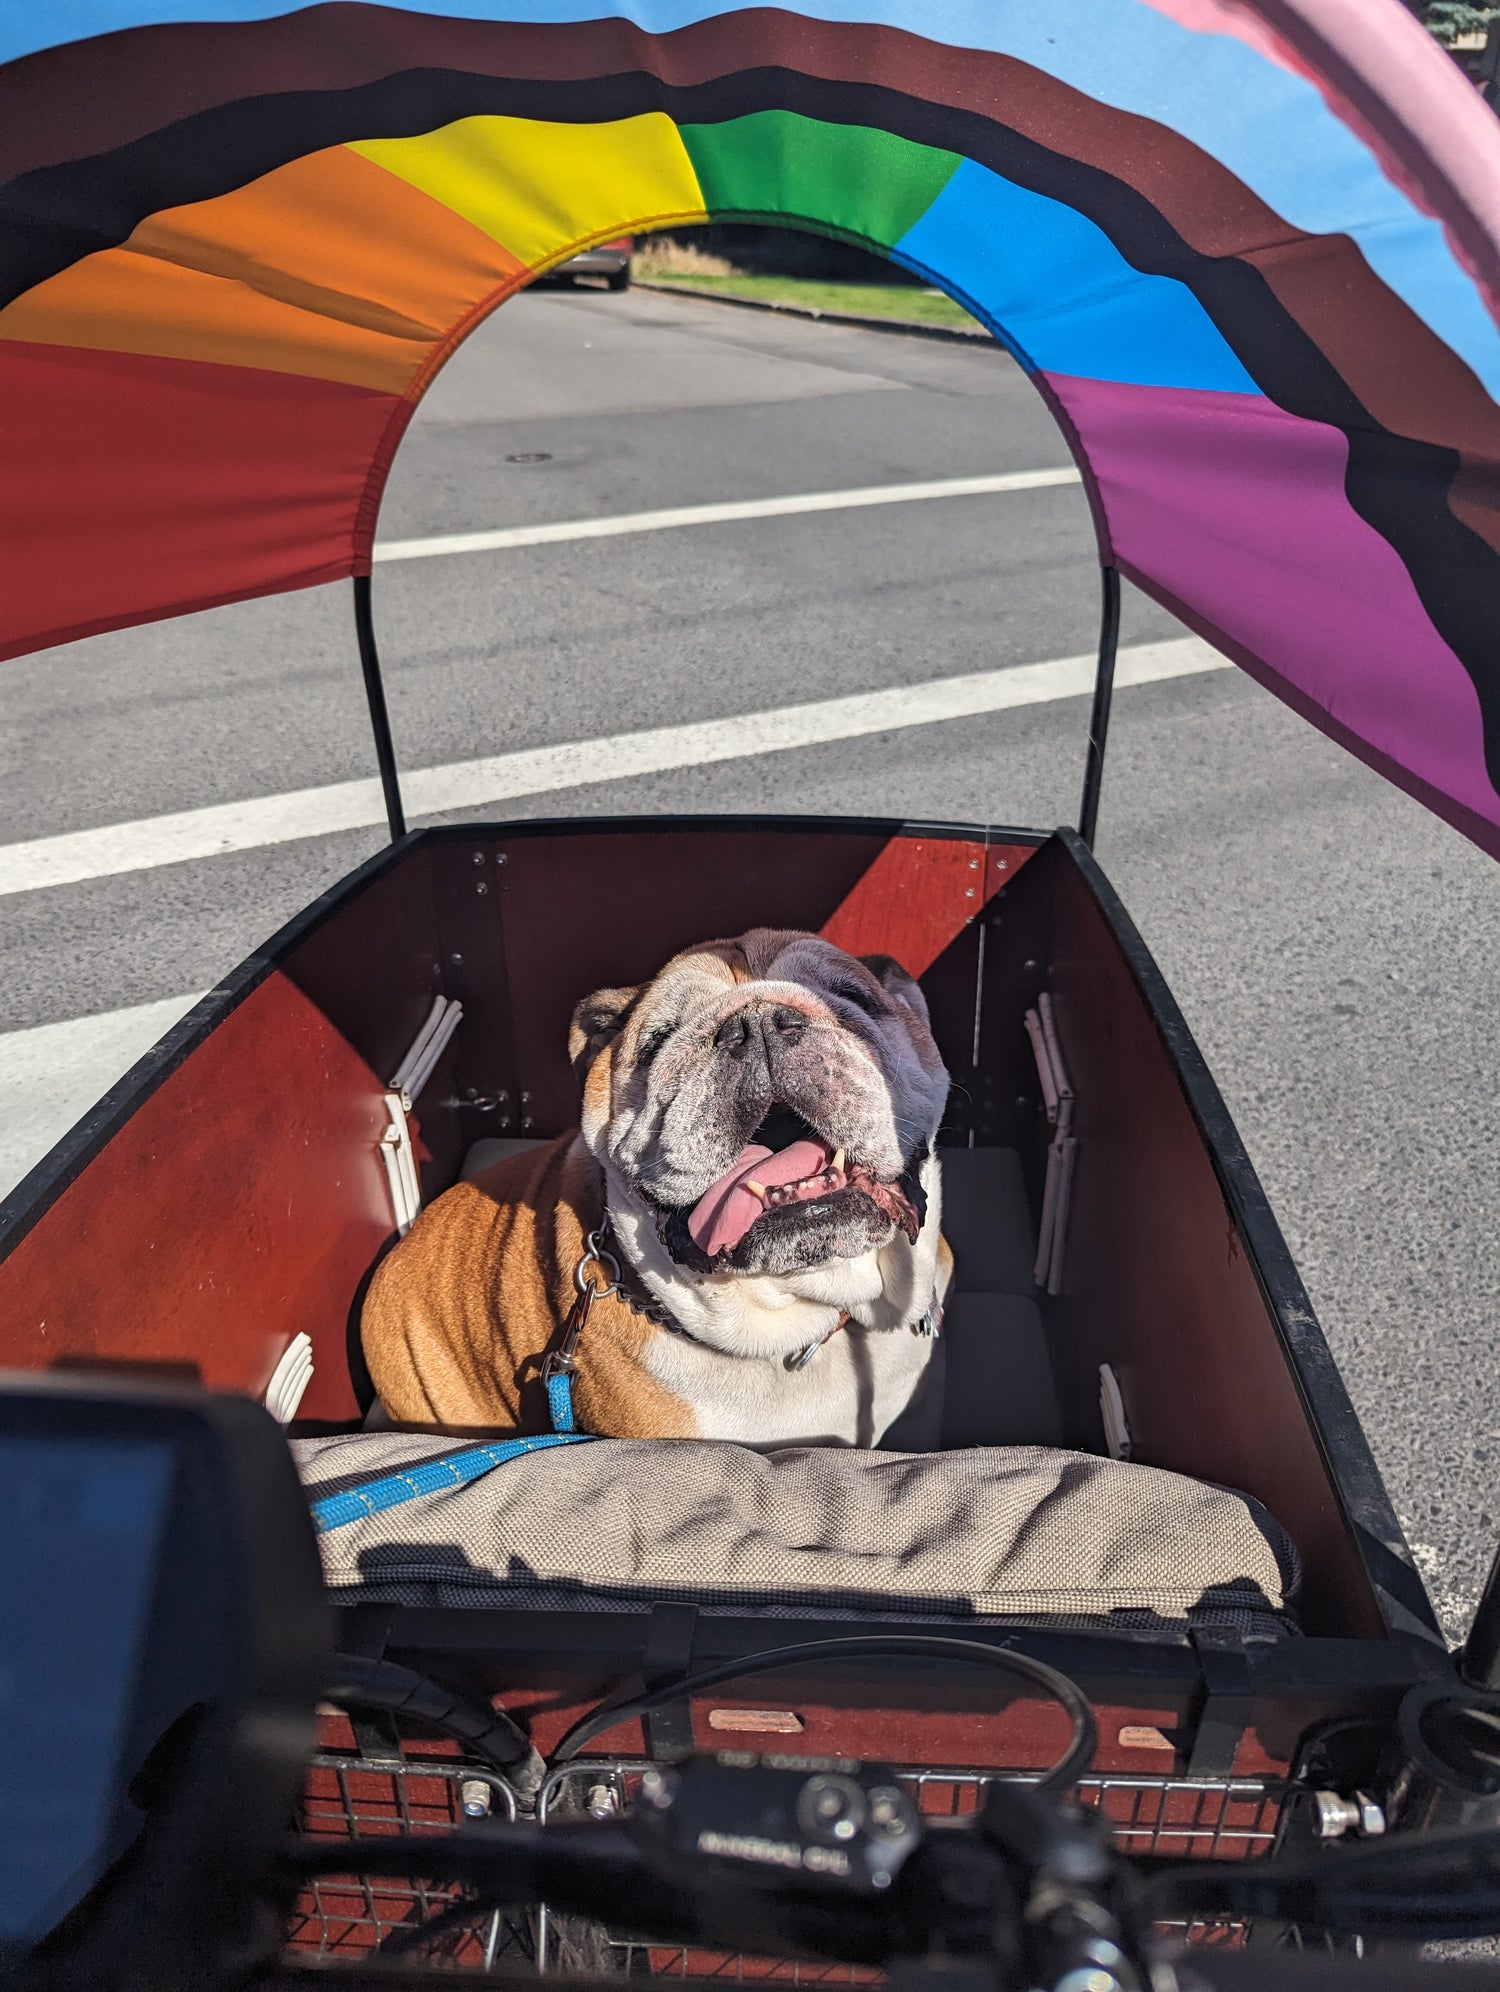 Hank the bulldog in a bunch bike with pride flag sun shade